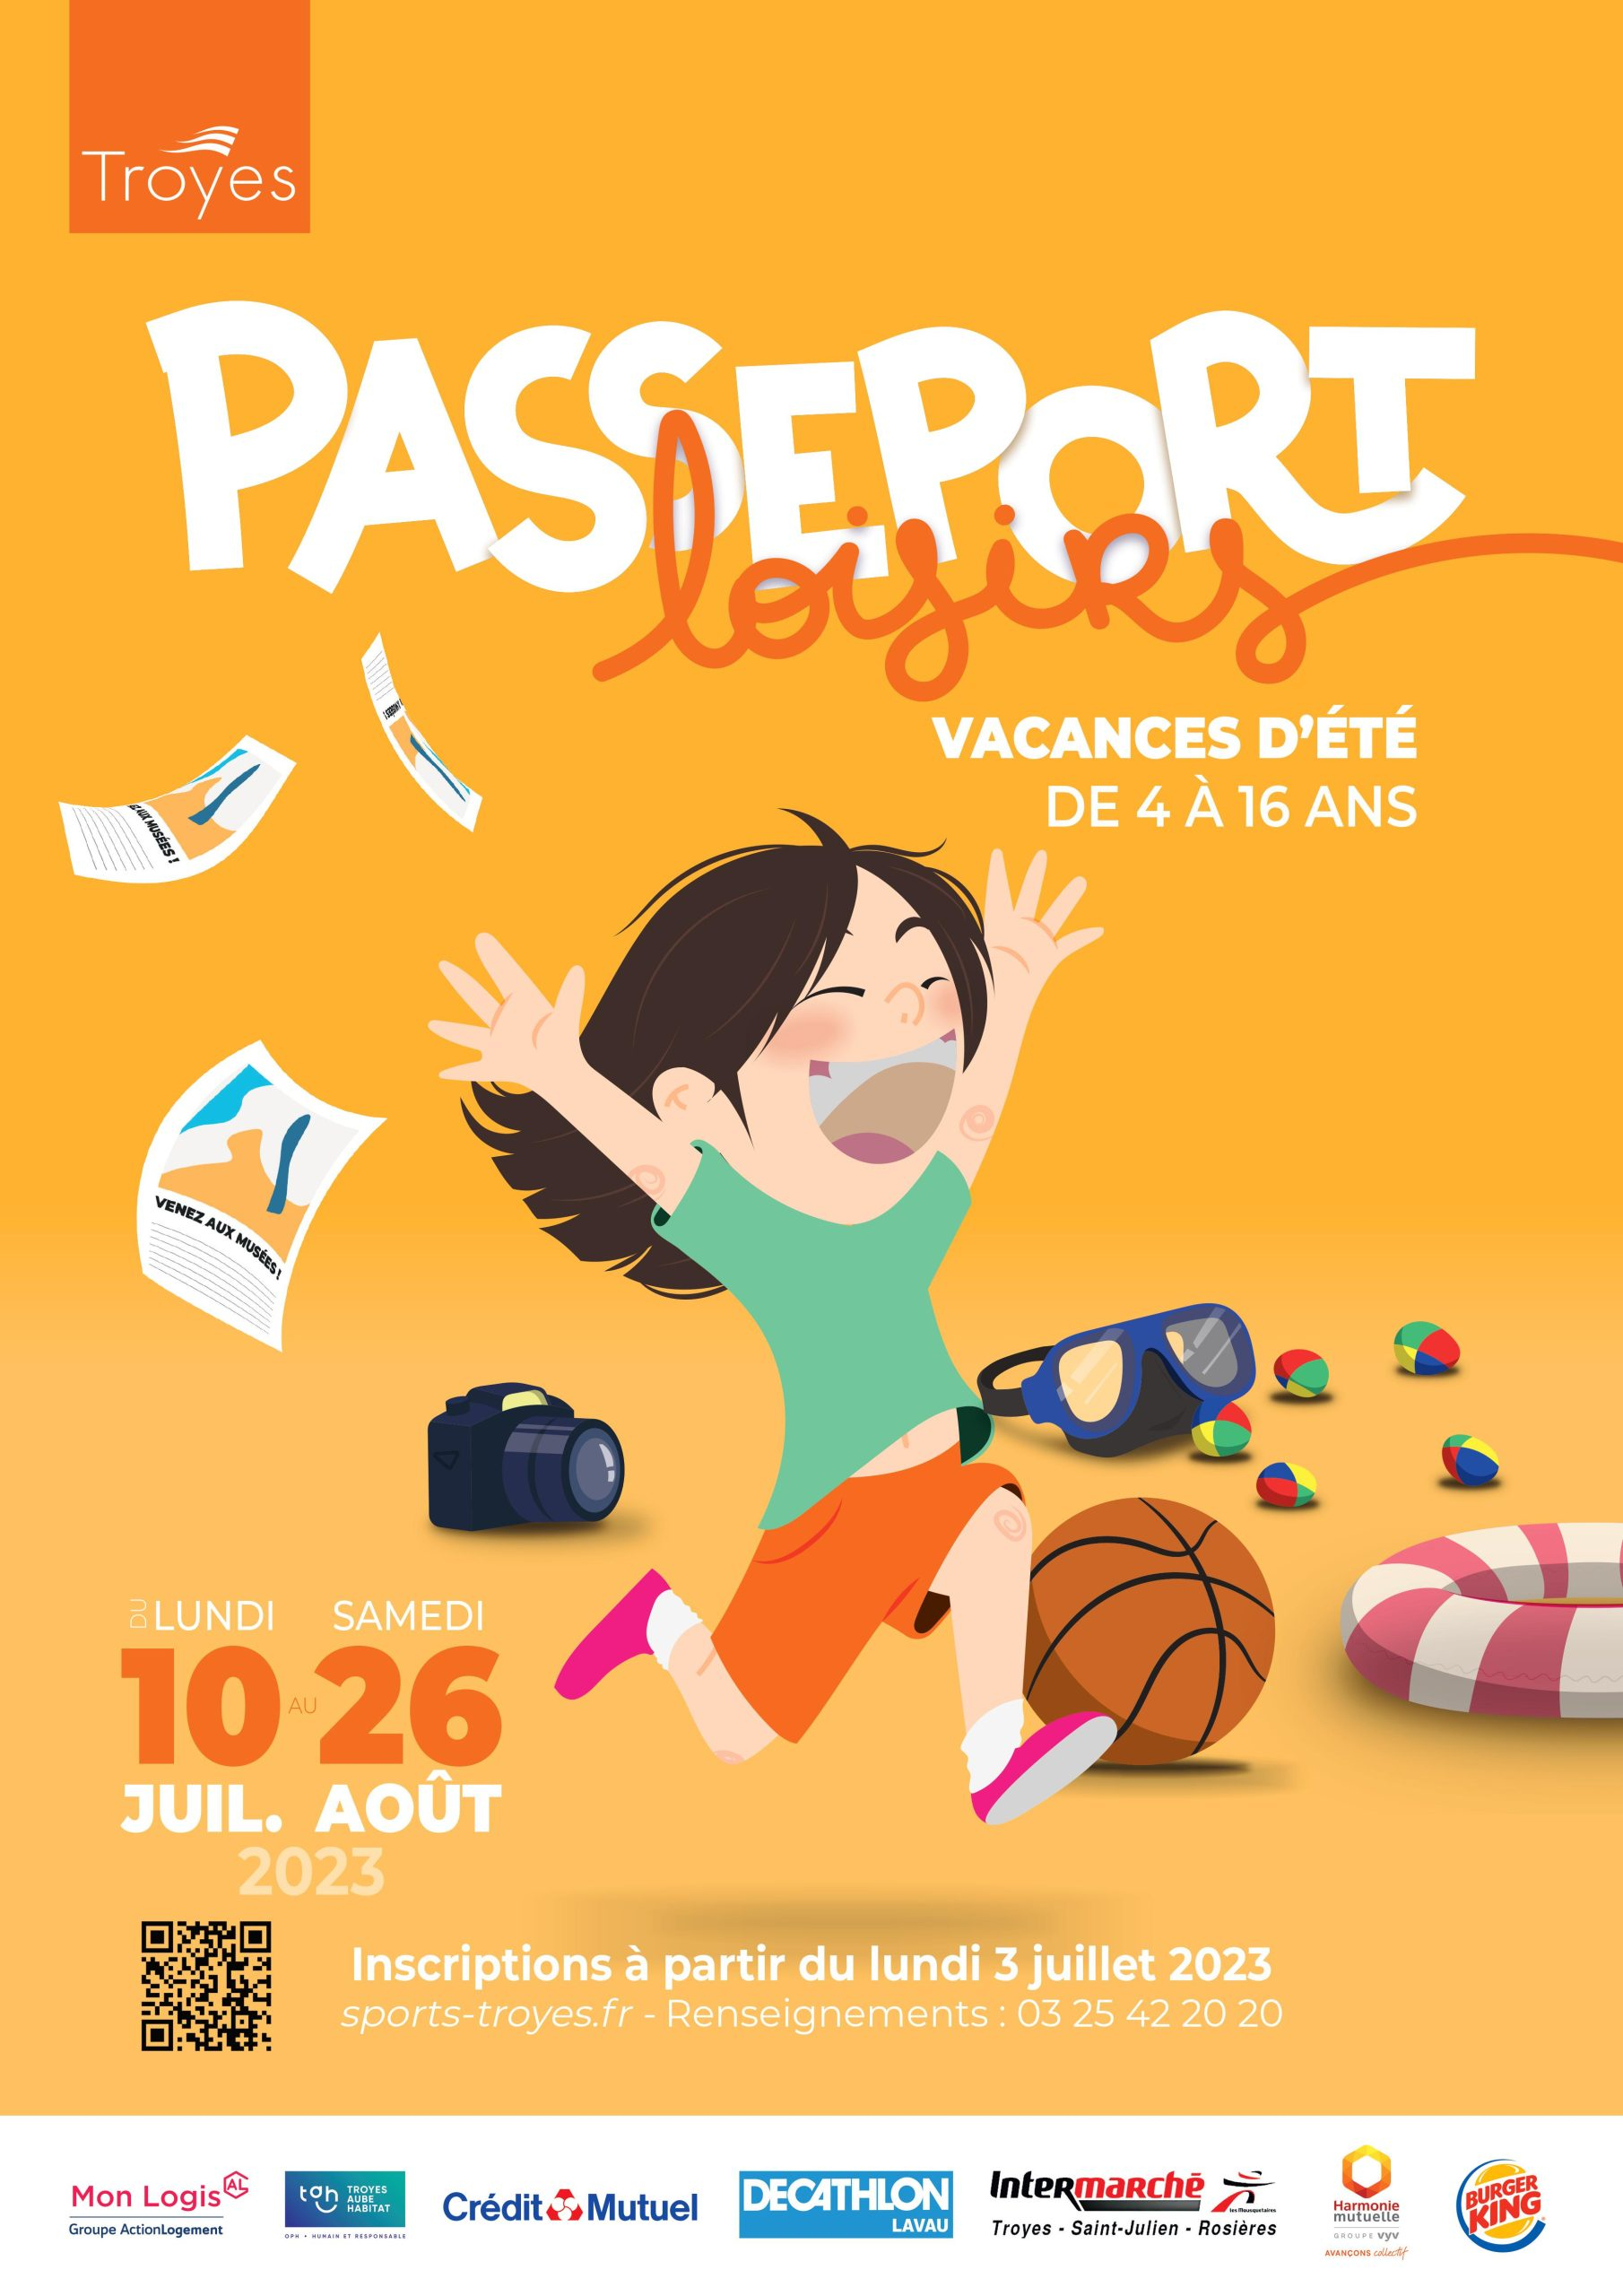 Passeport Loisirs - des activités à la carte pour se bouger pendant l'été à Troyes